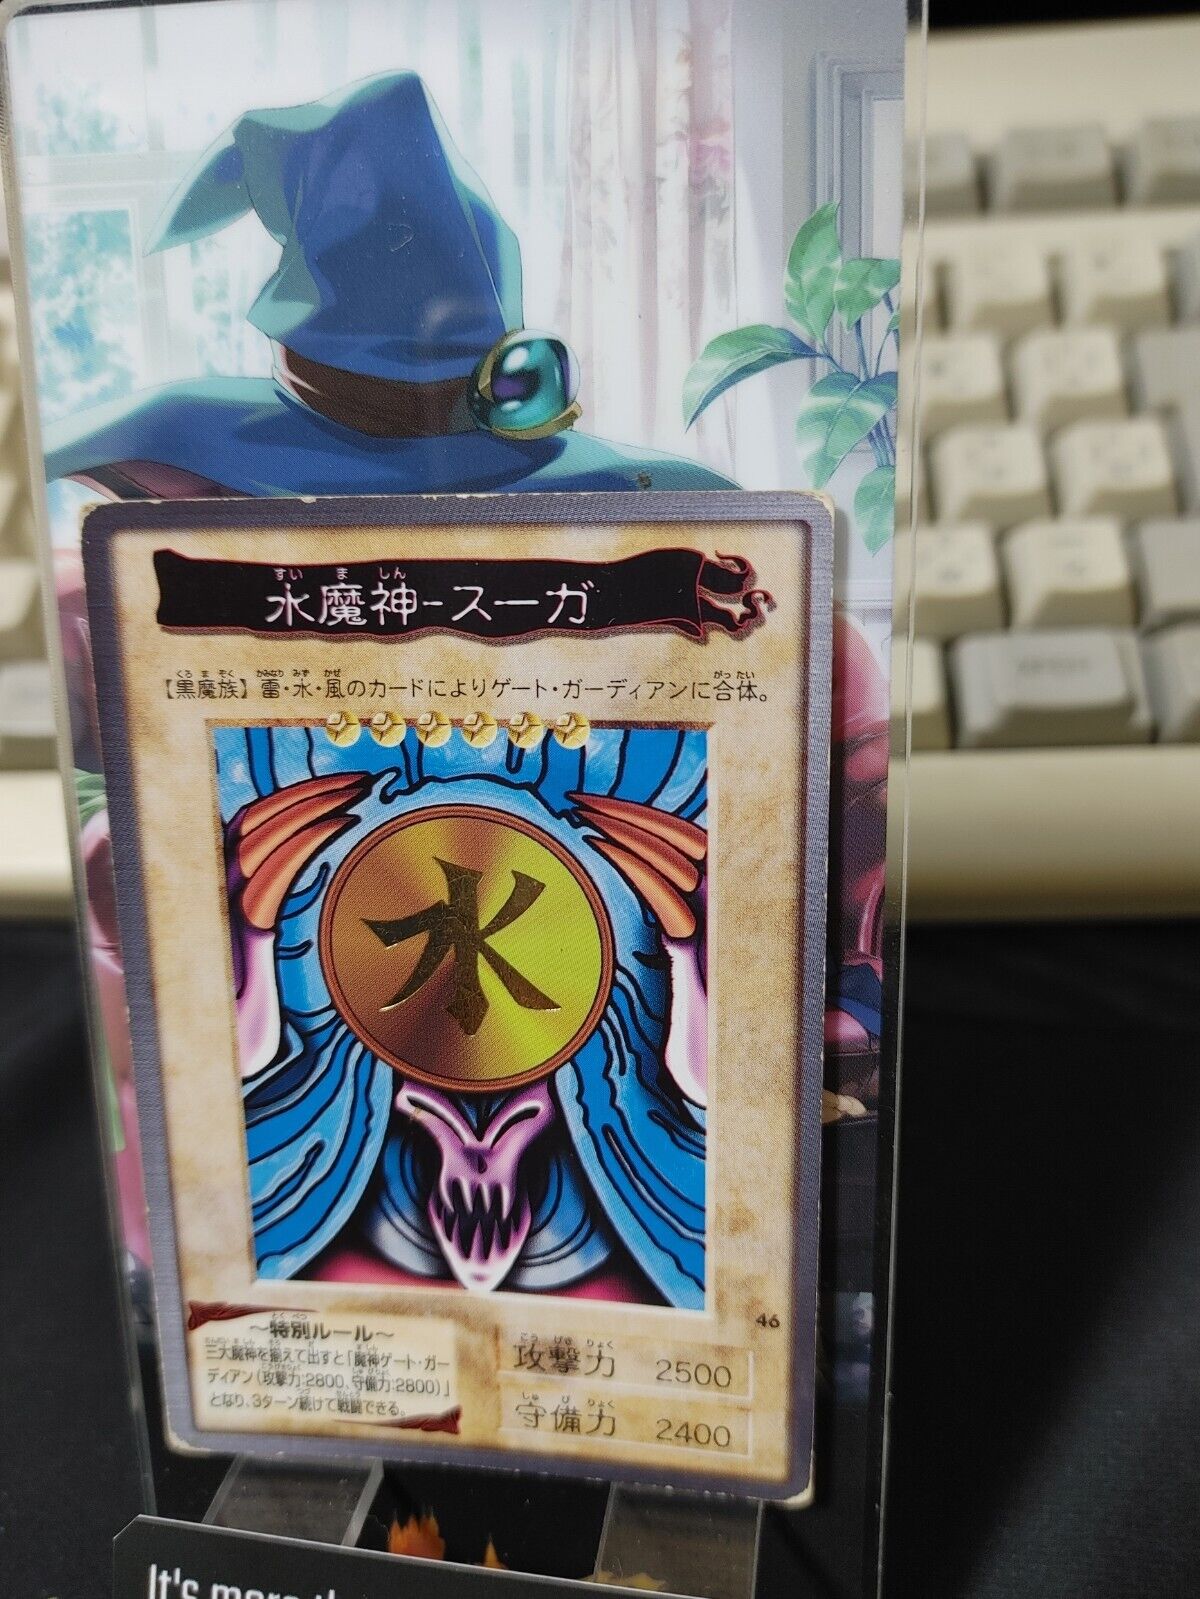 Yu-Gi-Oh Bandai Suijin Carddass Card #46 Japanese Retro Japan Rare